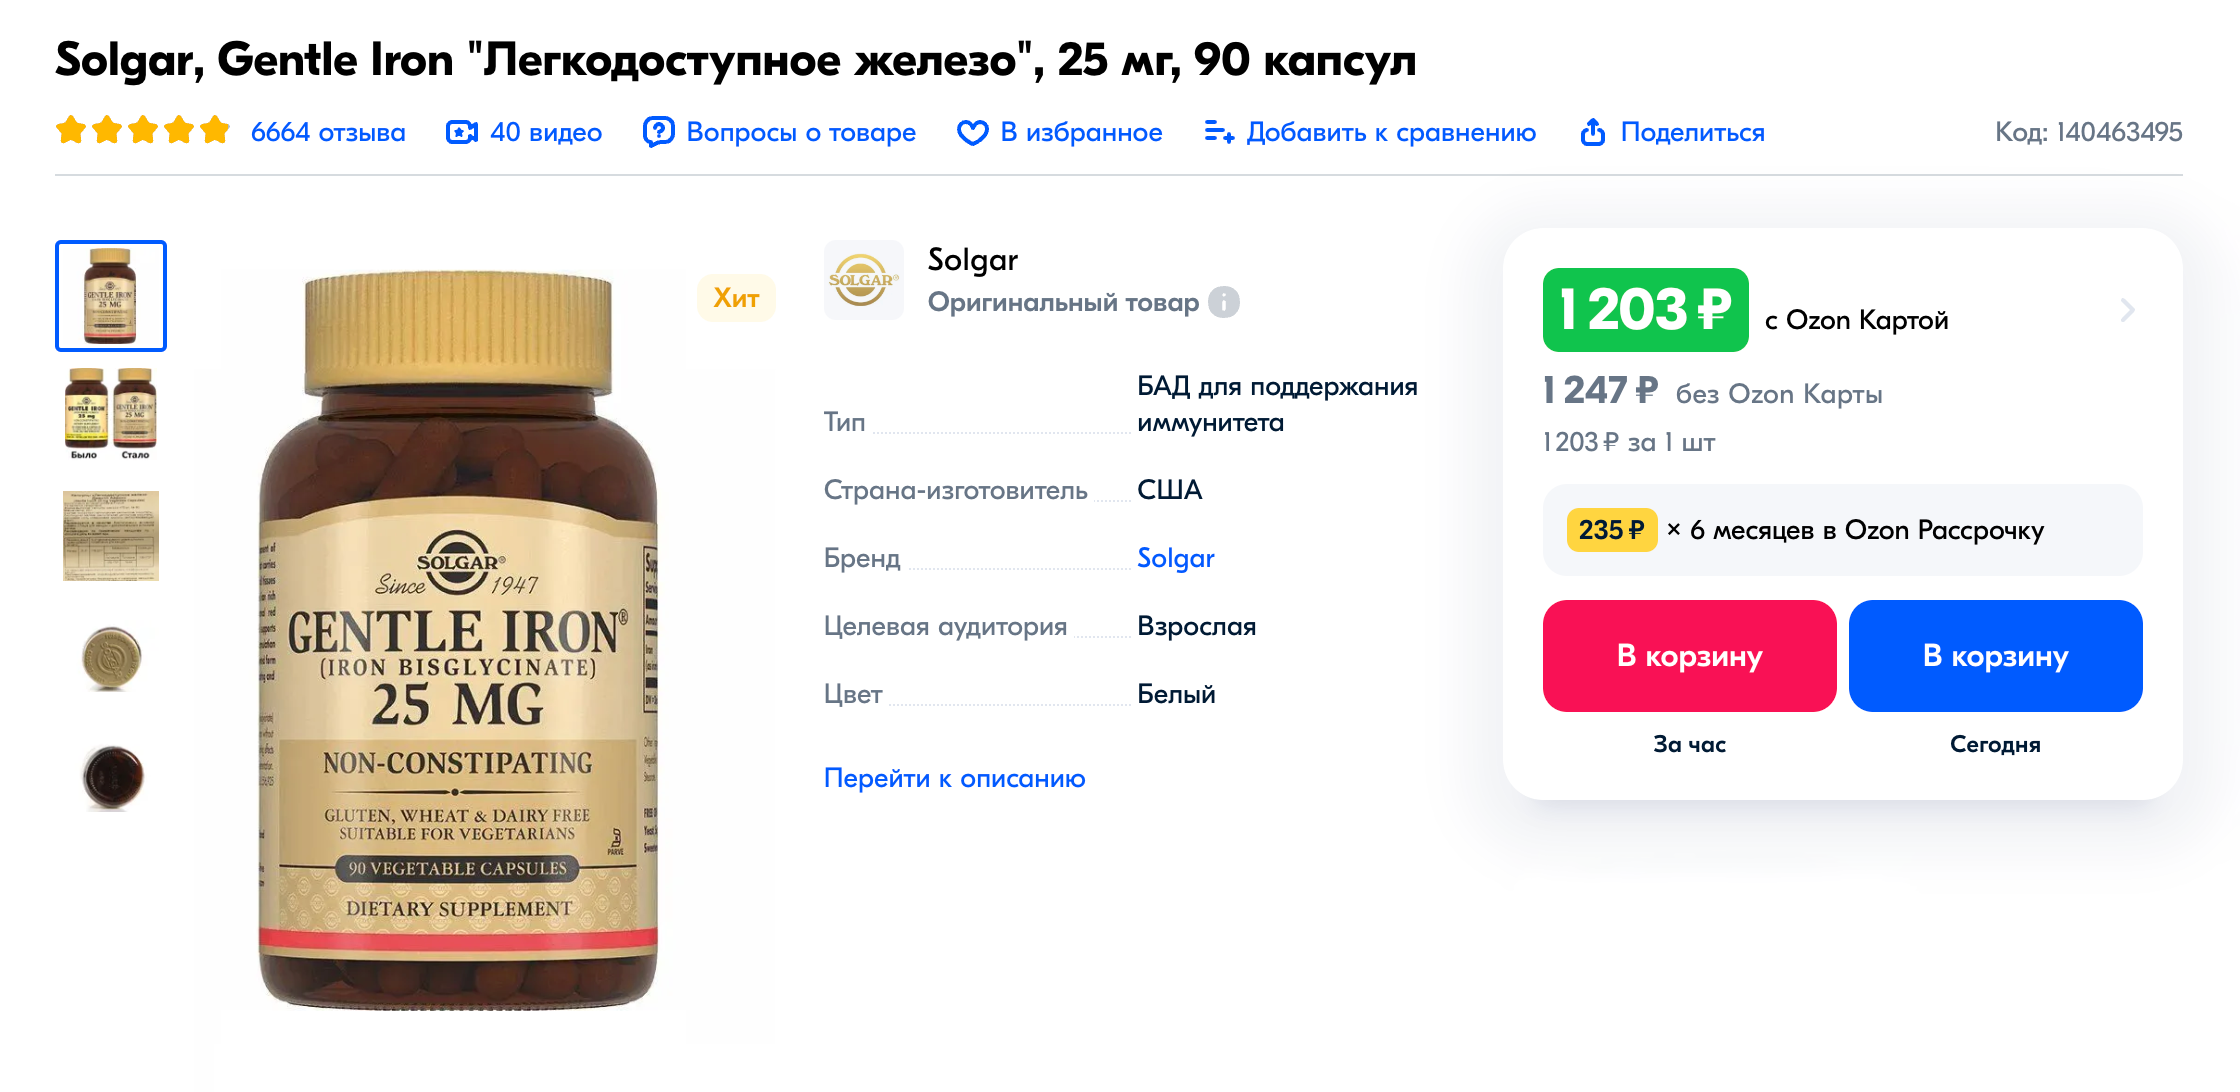 Мы покупали дорогие БАДы известной фирмы. Источник: ozon.ru